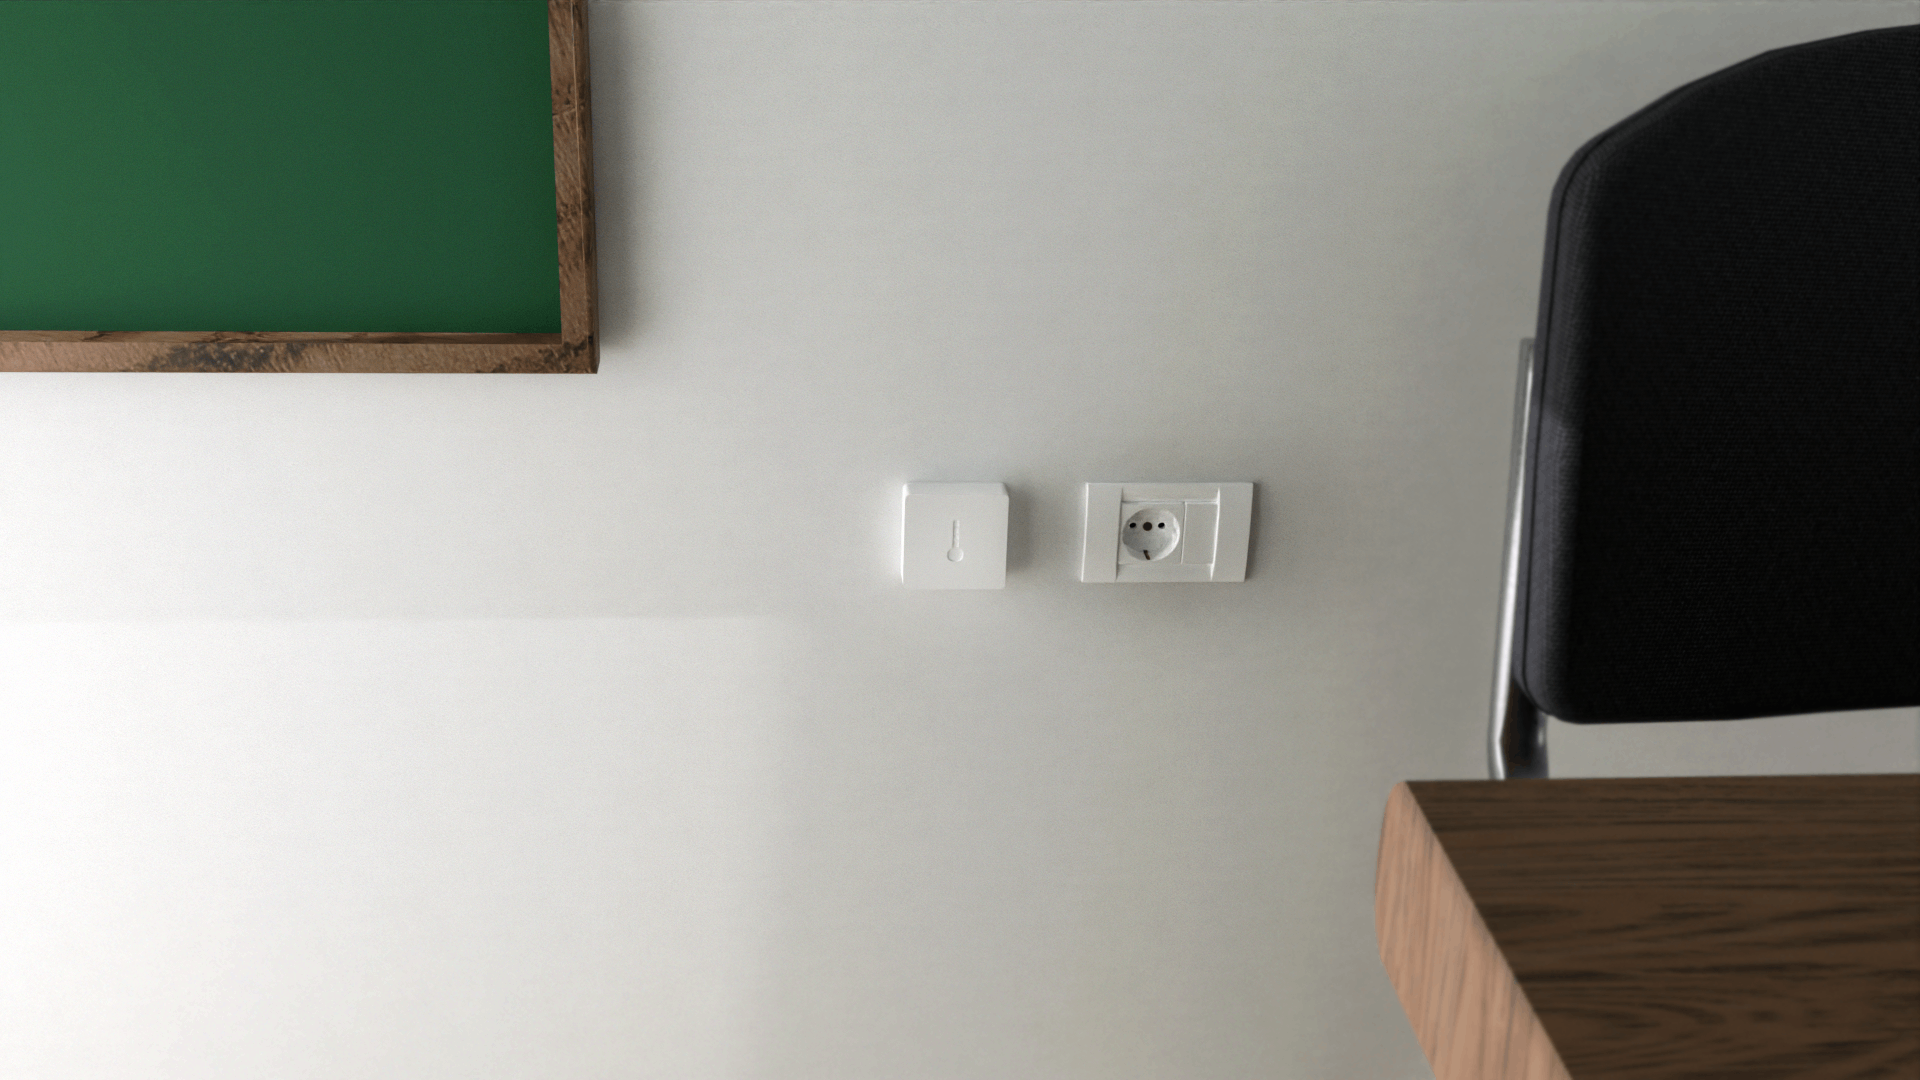 Senzor temperature i vlažnosti vazduha u učionici